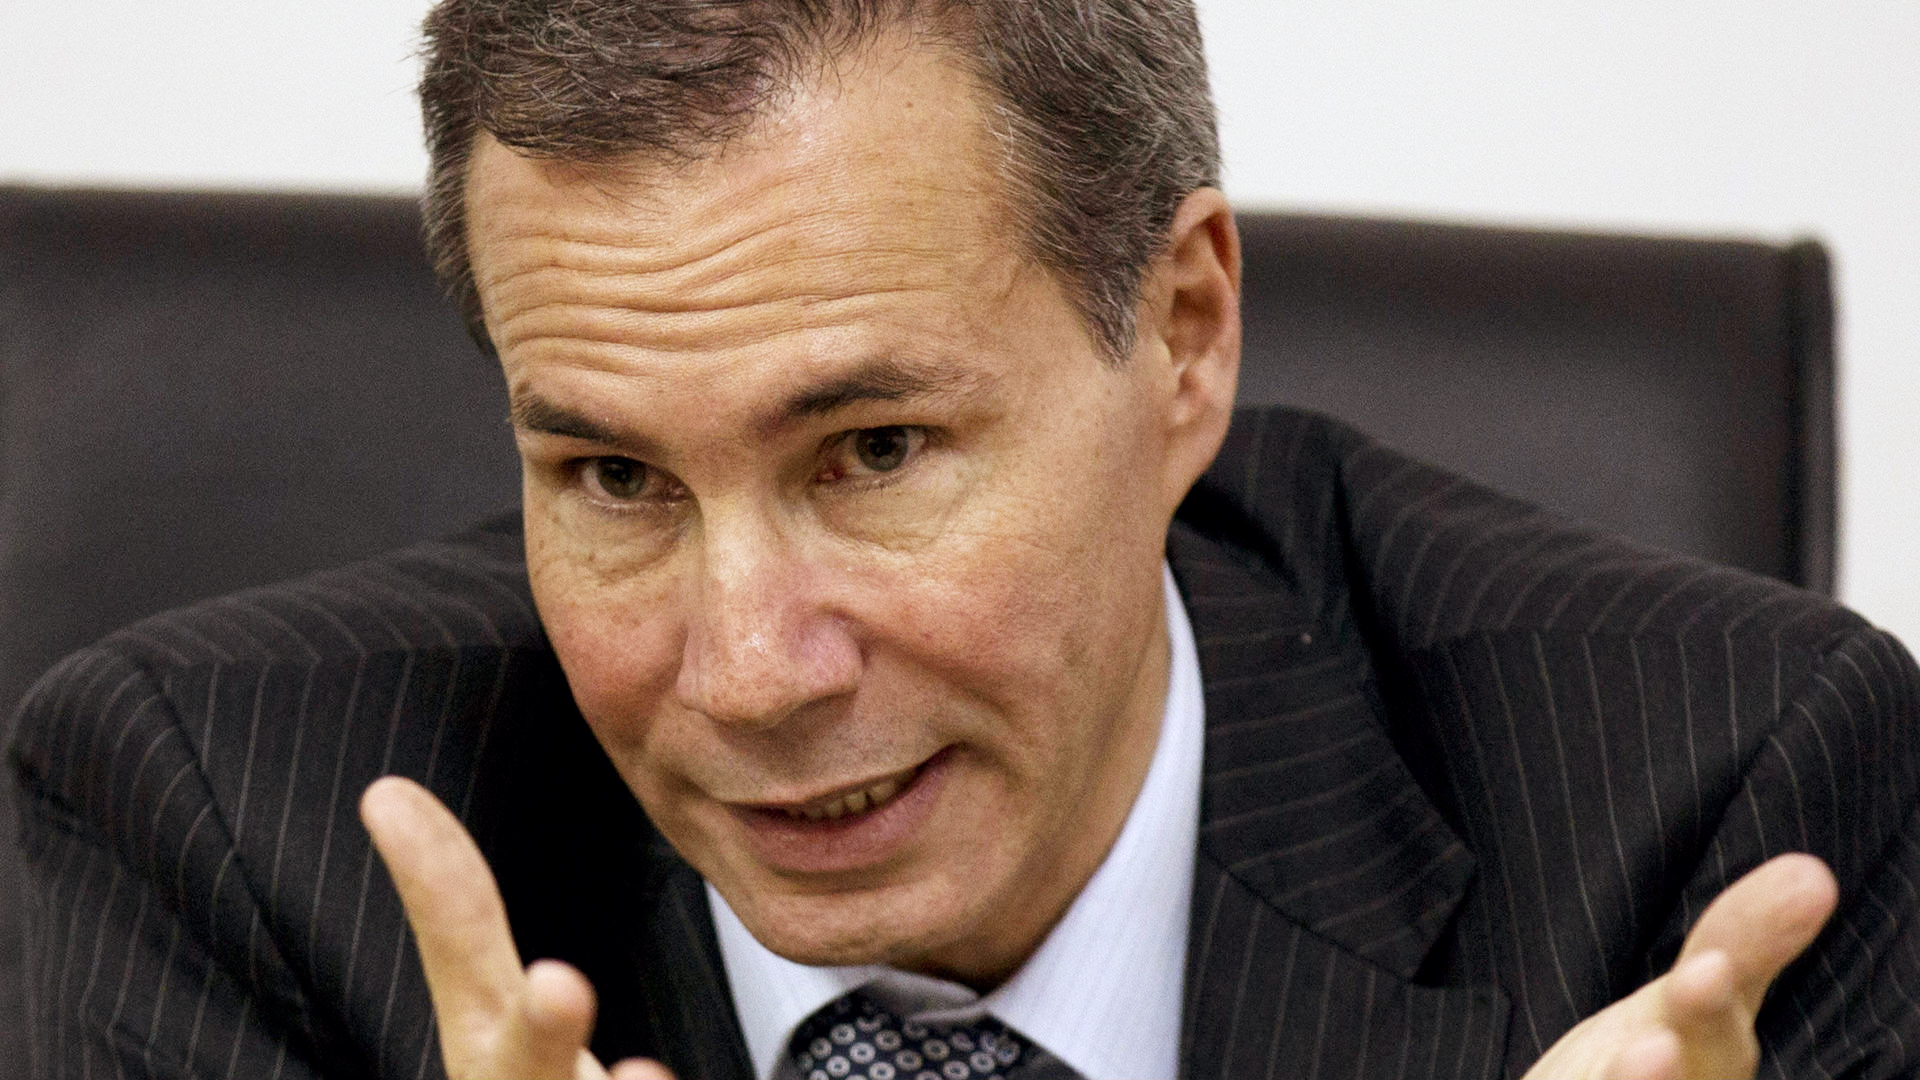 Late attorney Alberto Nisman